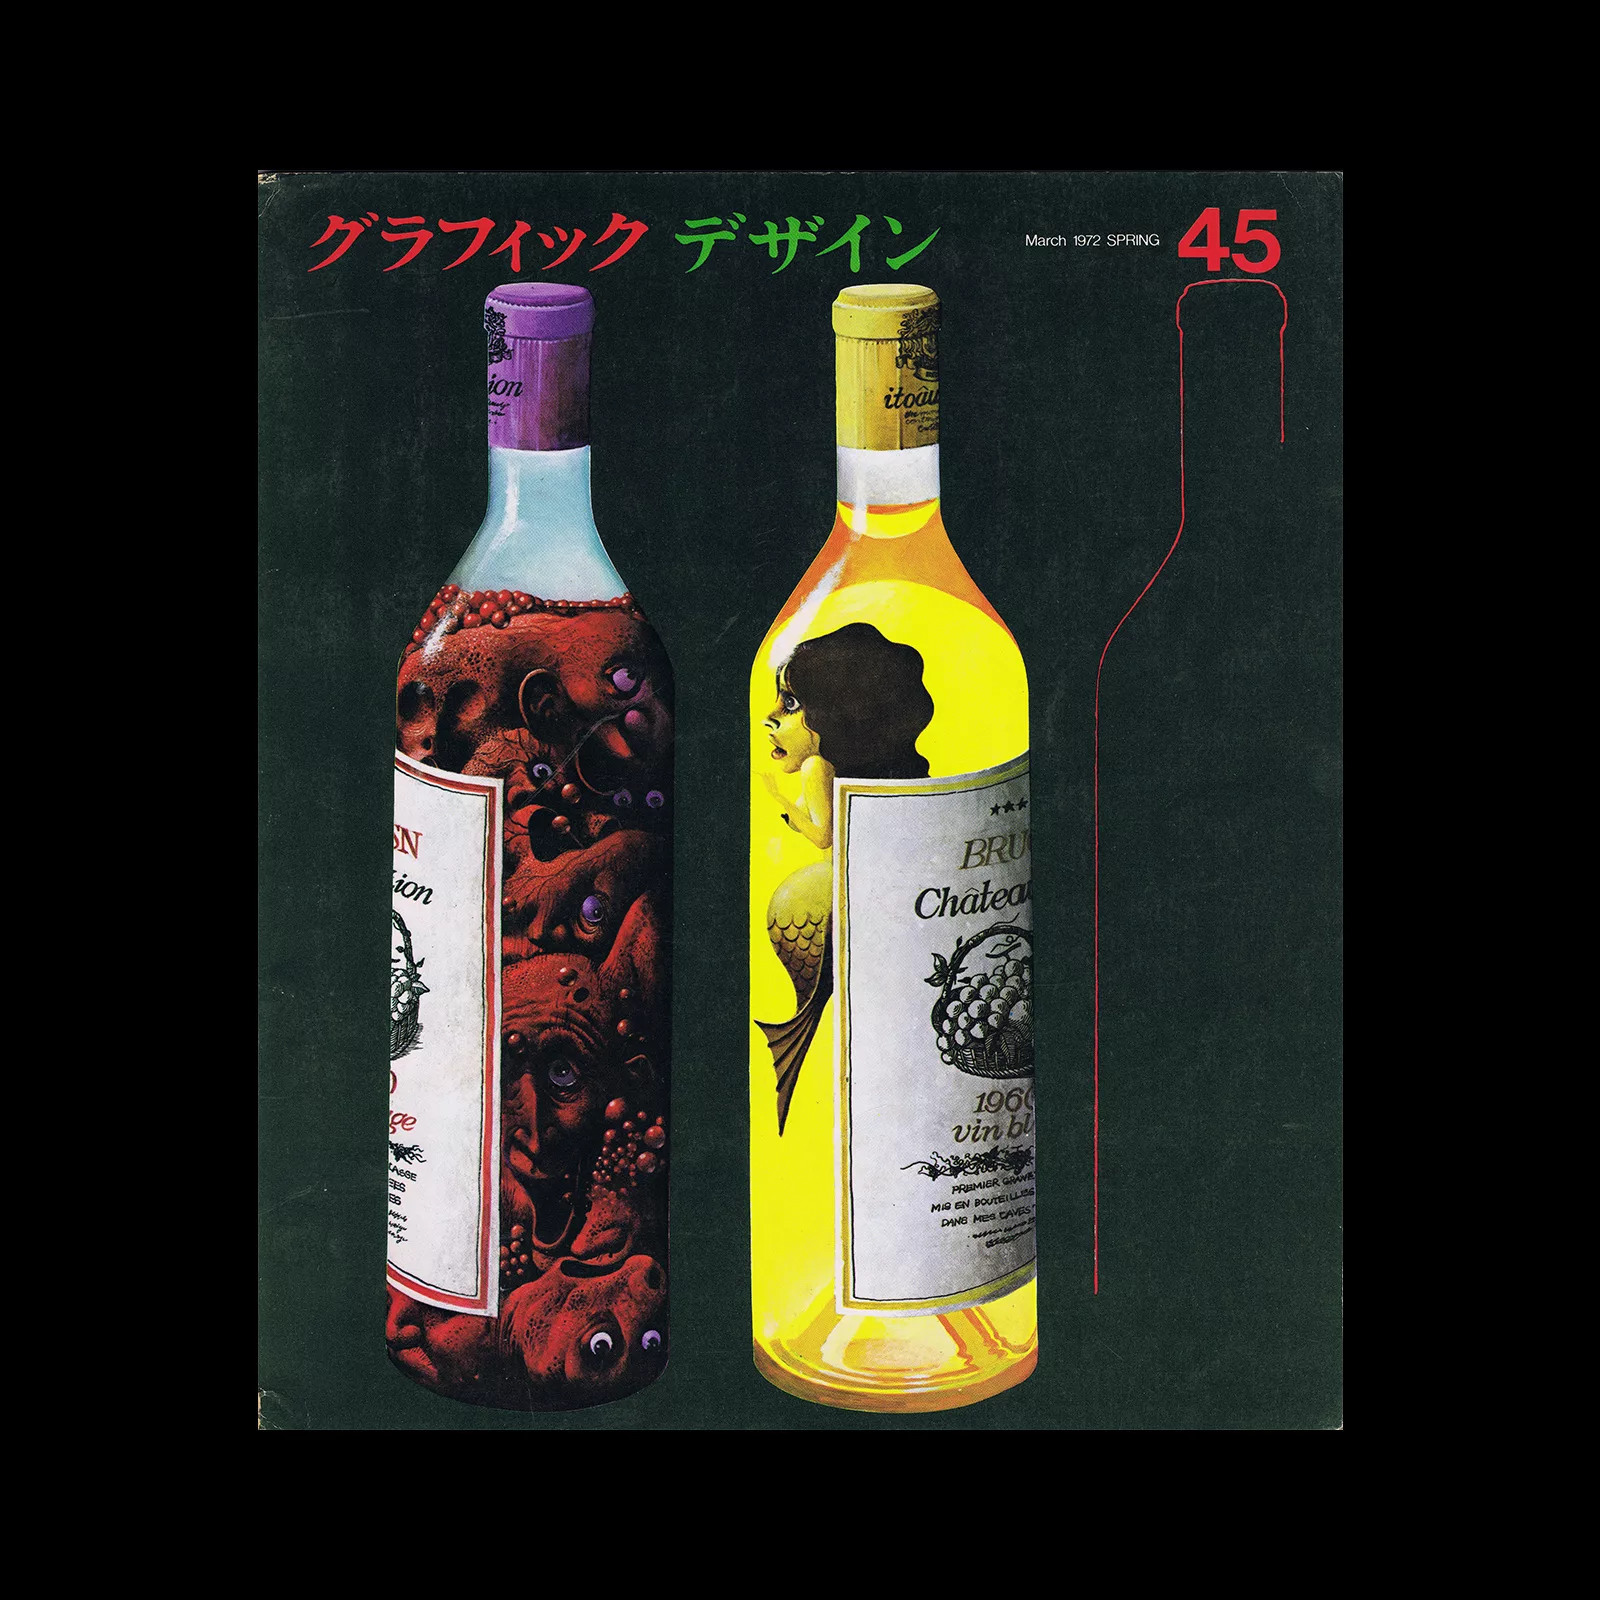 Graphic Design 45, 1972. Cover design by Tsutomu Ejima